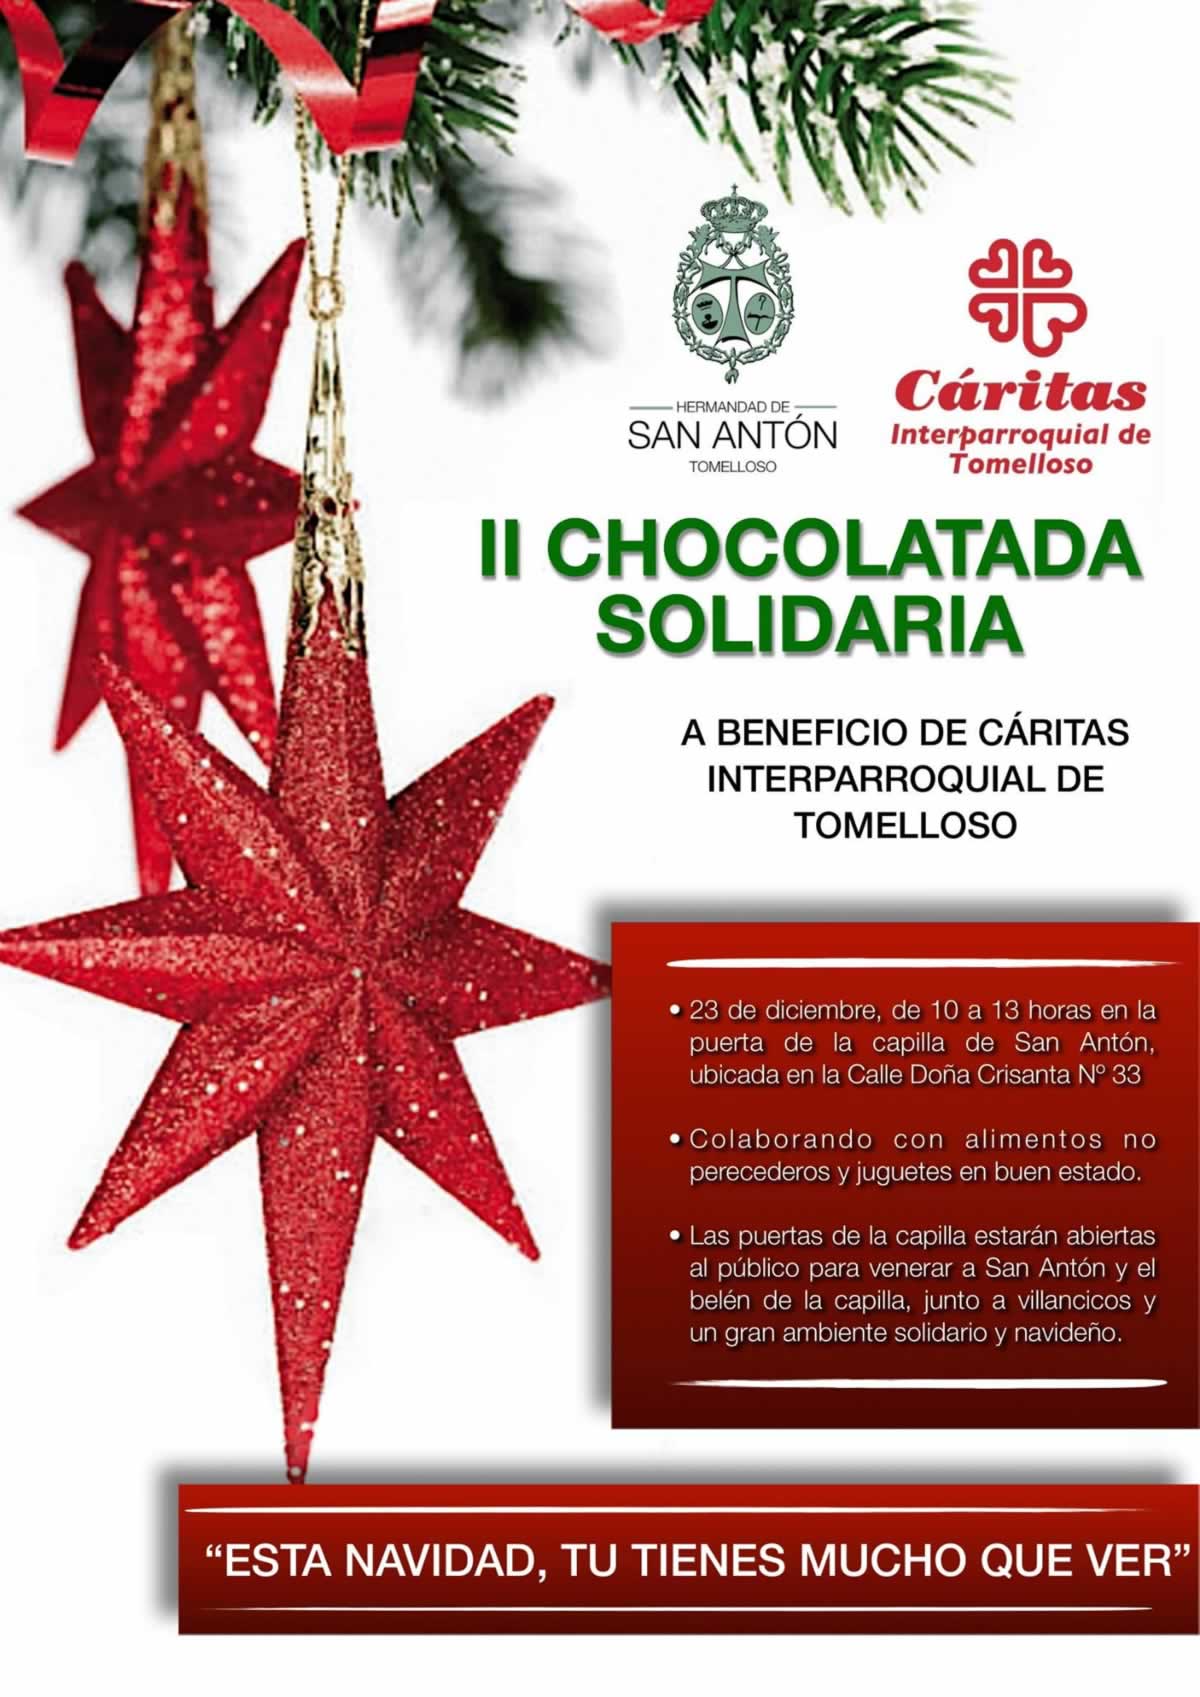 La Hermandad de San Antón celebrará la II Chocolatada Solidaria a beneficio de Cáritas Interparroquial